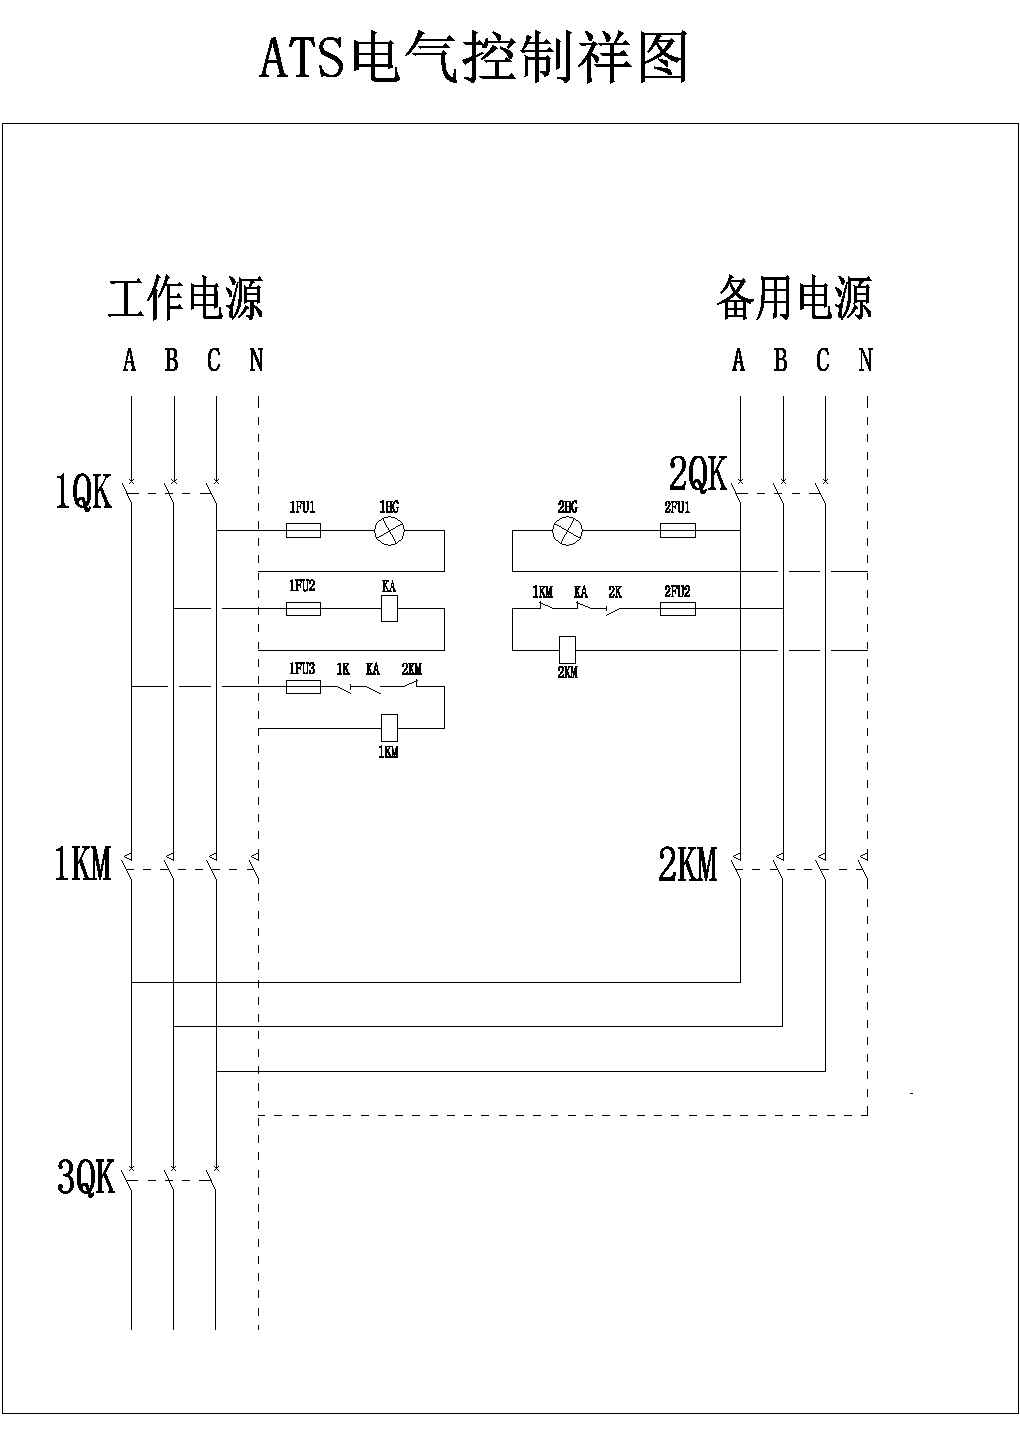 某标准型ATS断路器设备电气系统总装设计CAD图纸